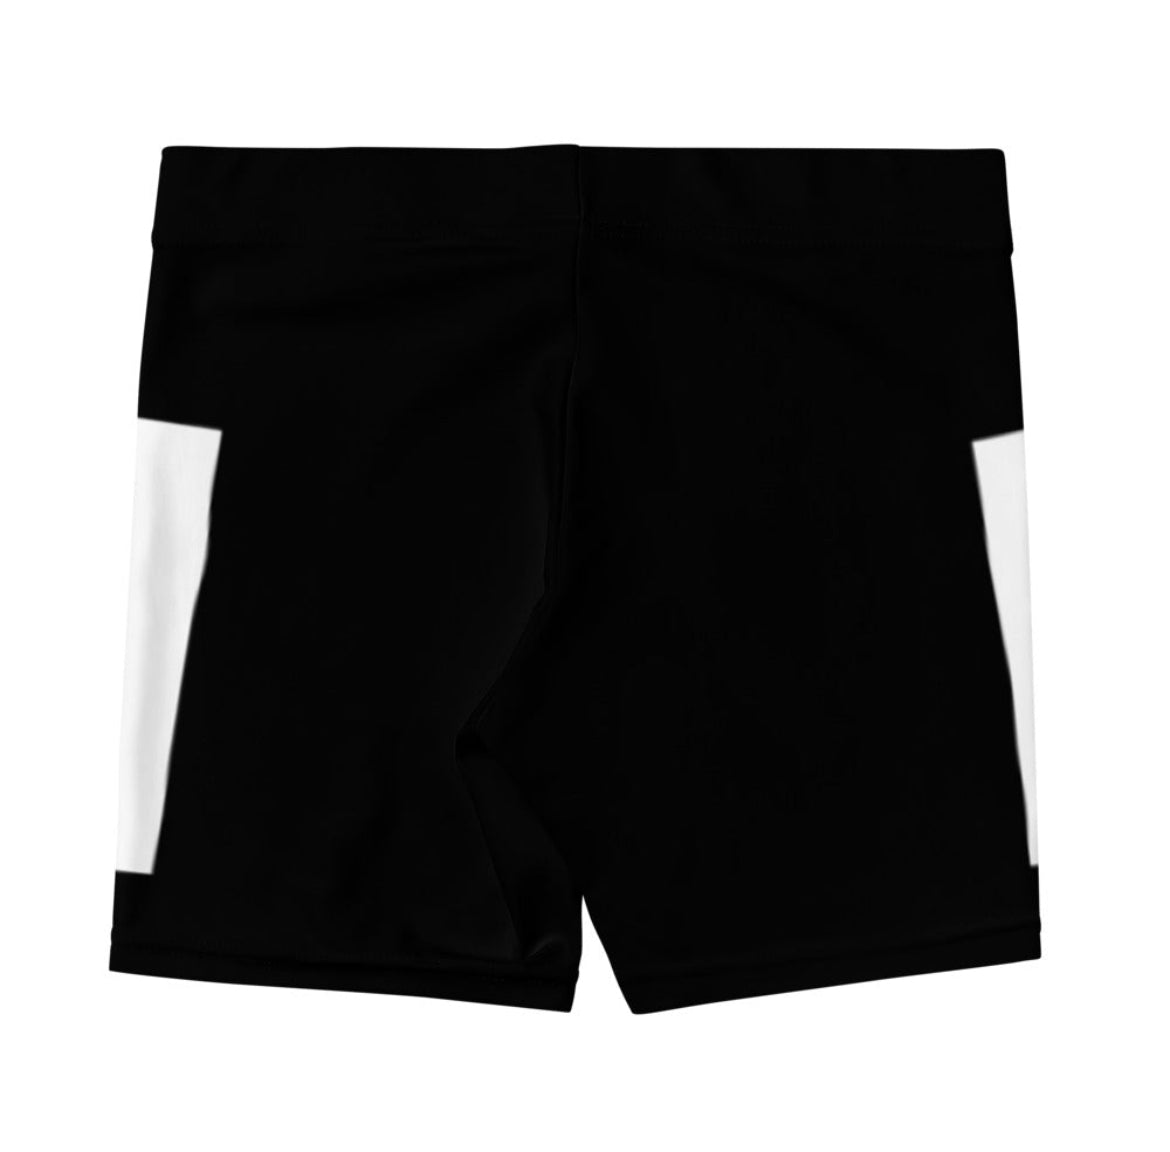 Valley Shorts Black/White